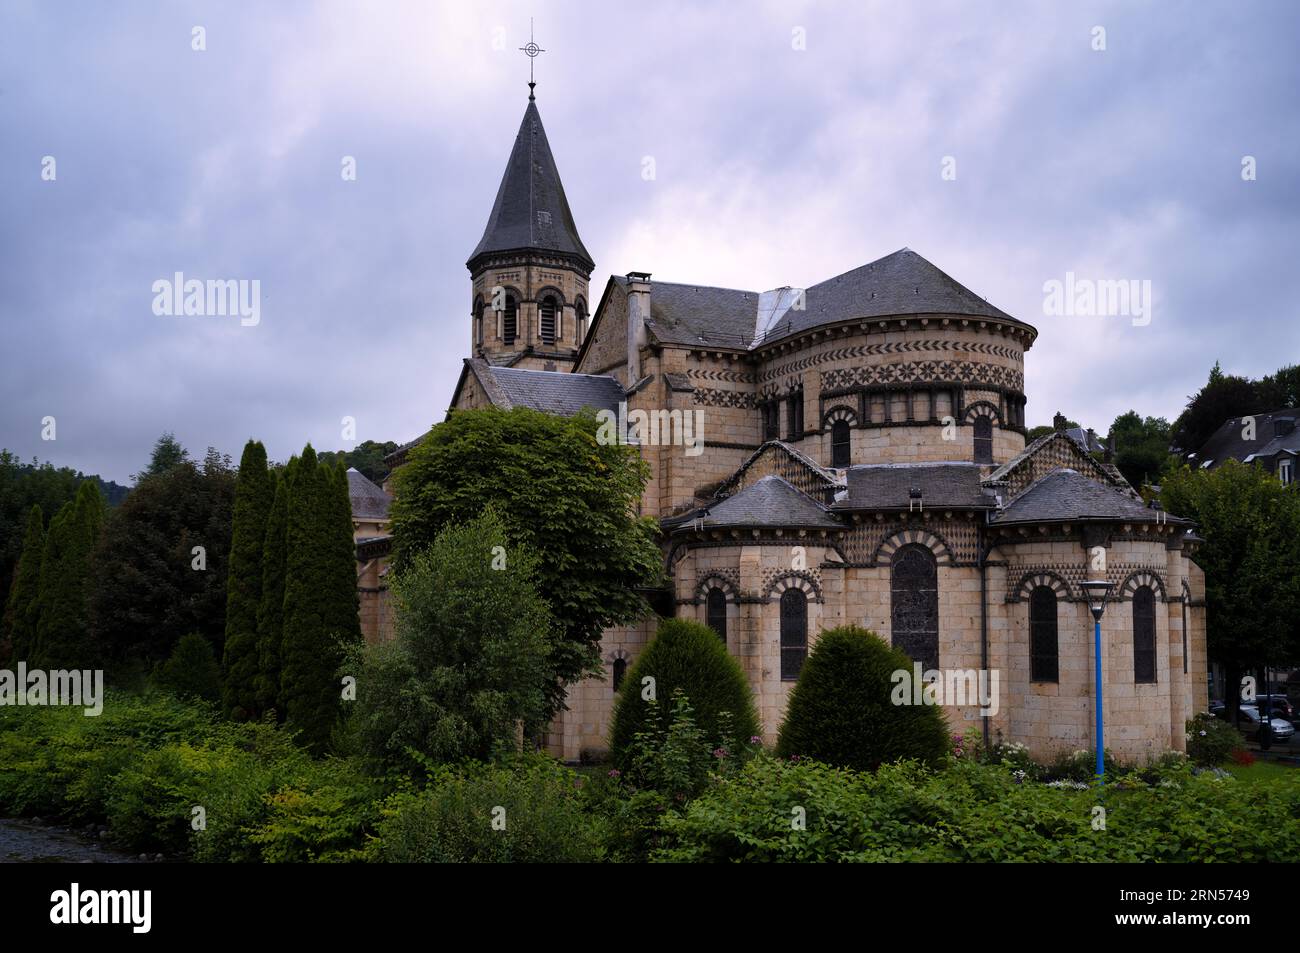 Saint Joseph Church, La Bourboule, Puy-de-Dome department, Auvergne-Rhone-Alpes region, France Stock Photo